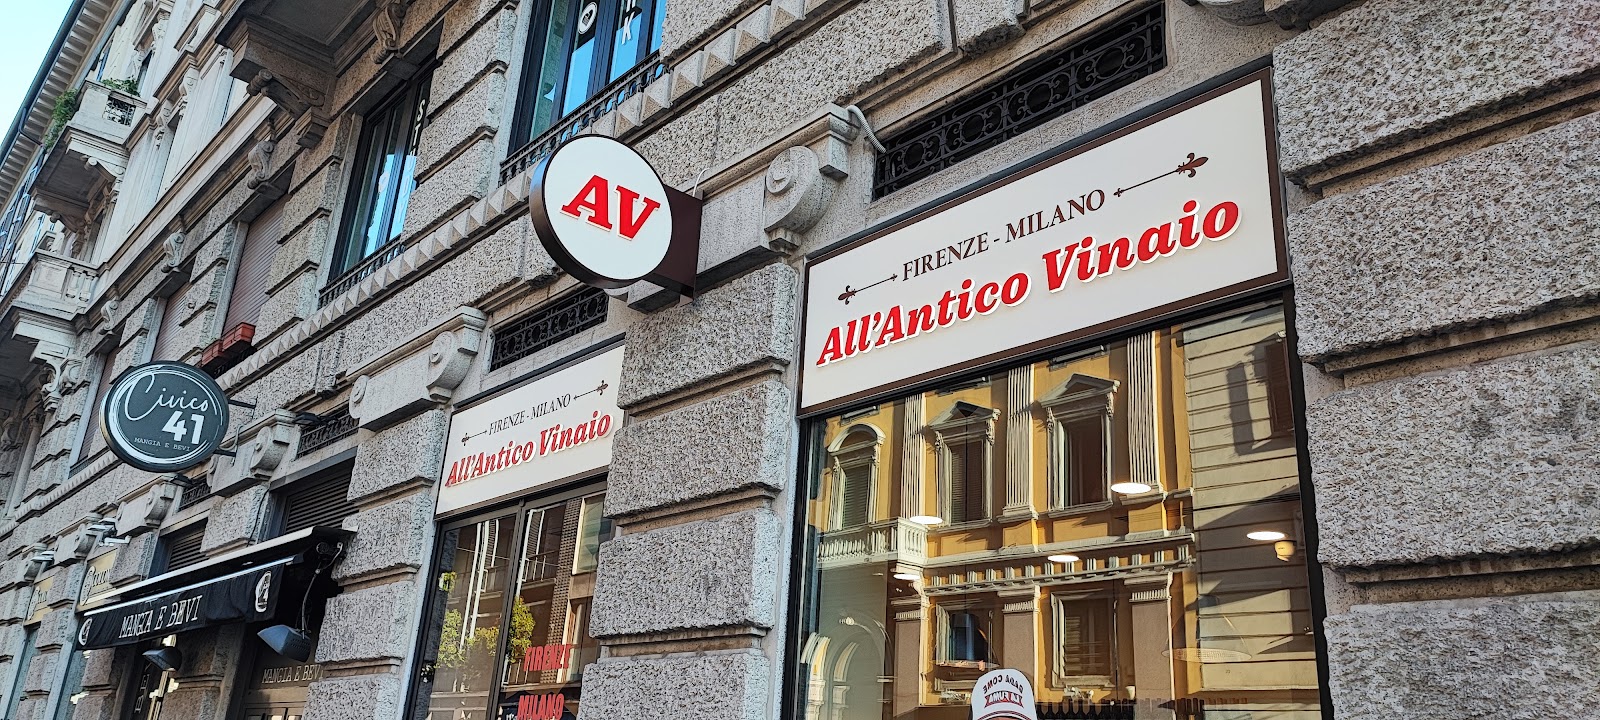 Foto di All'antico Vinaio - Milano